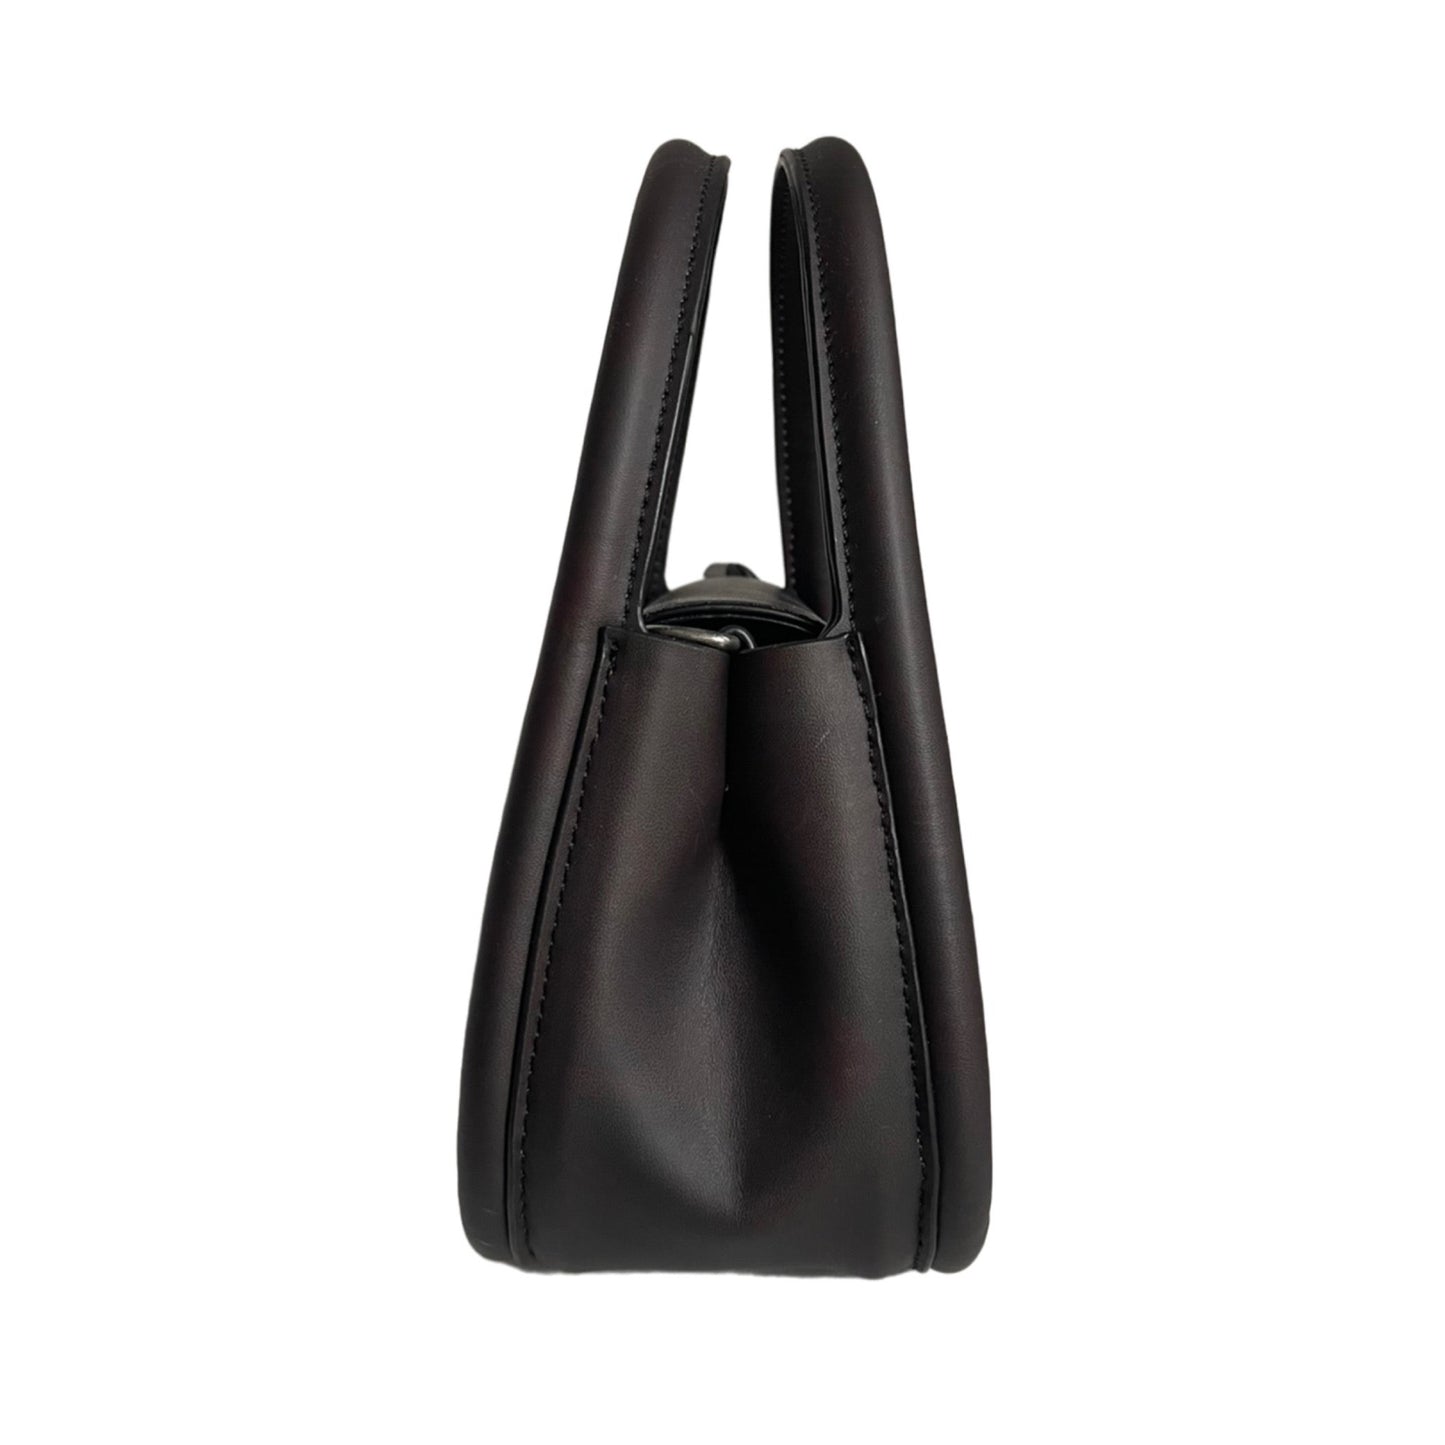 ‘The Vivid’ Bag mini